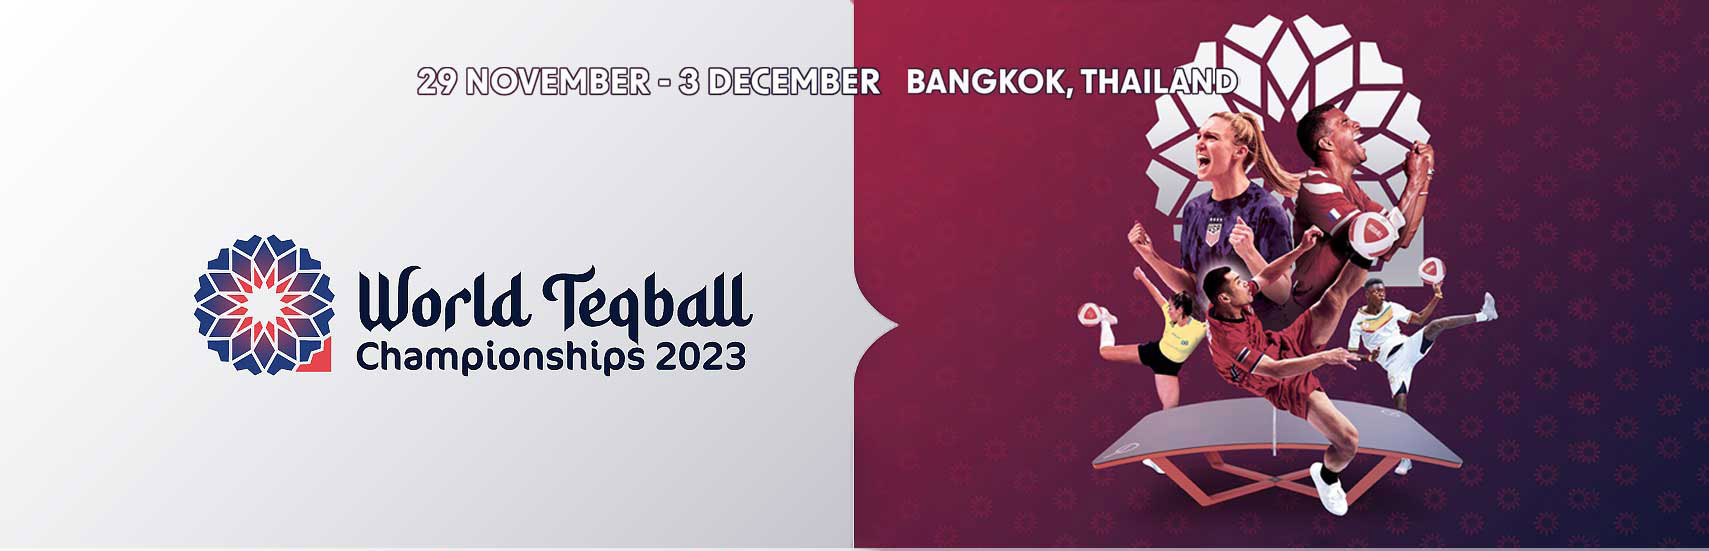 World Teqball Championships 2023